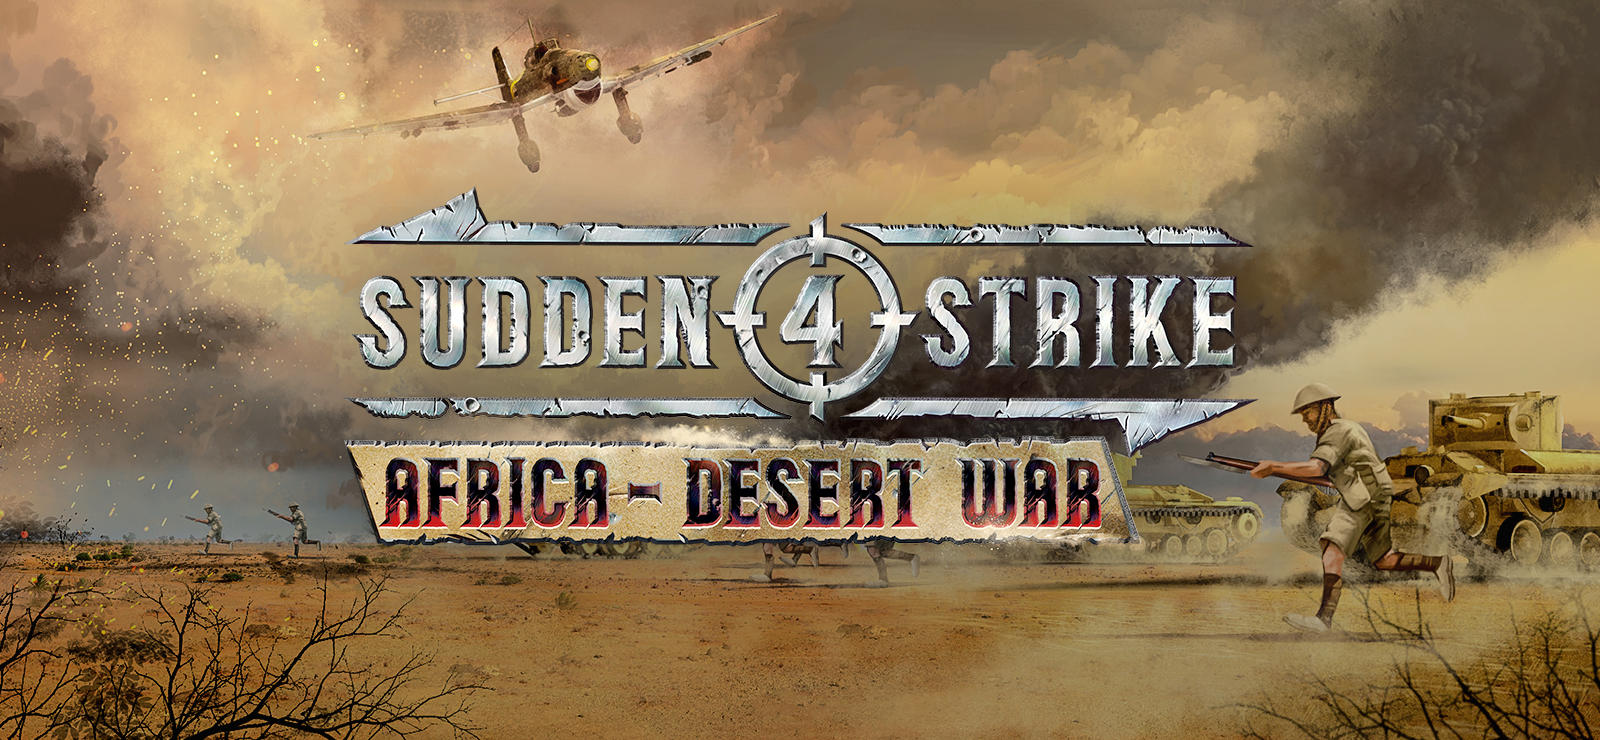 Sudden Strike 4 - Africa: Desert War